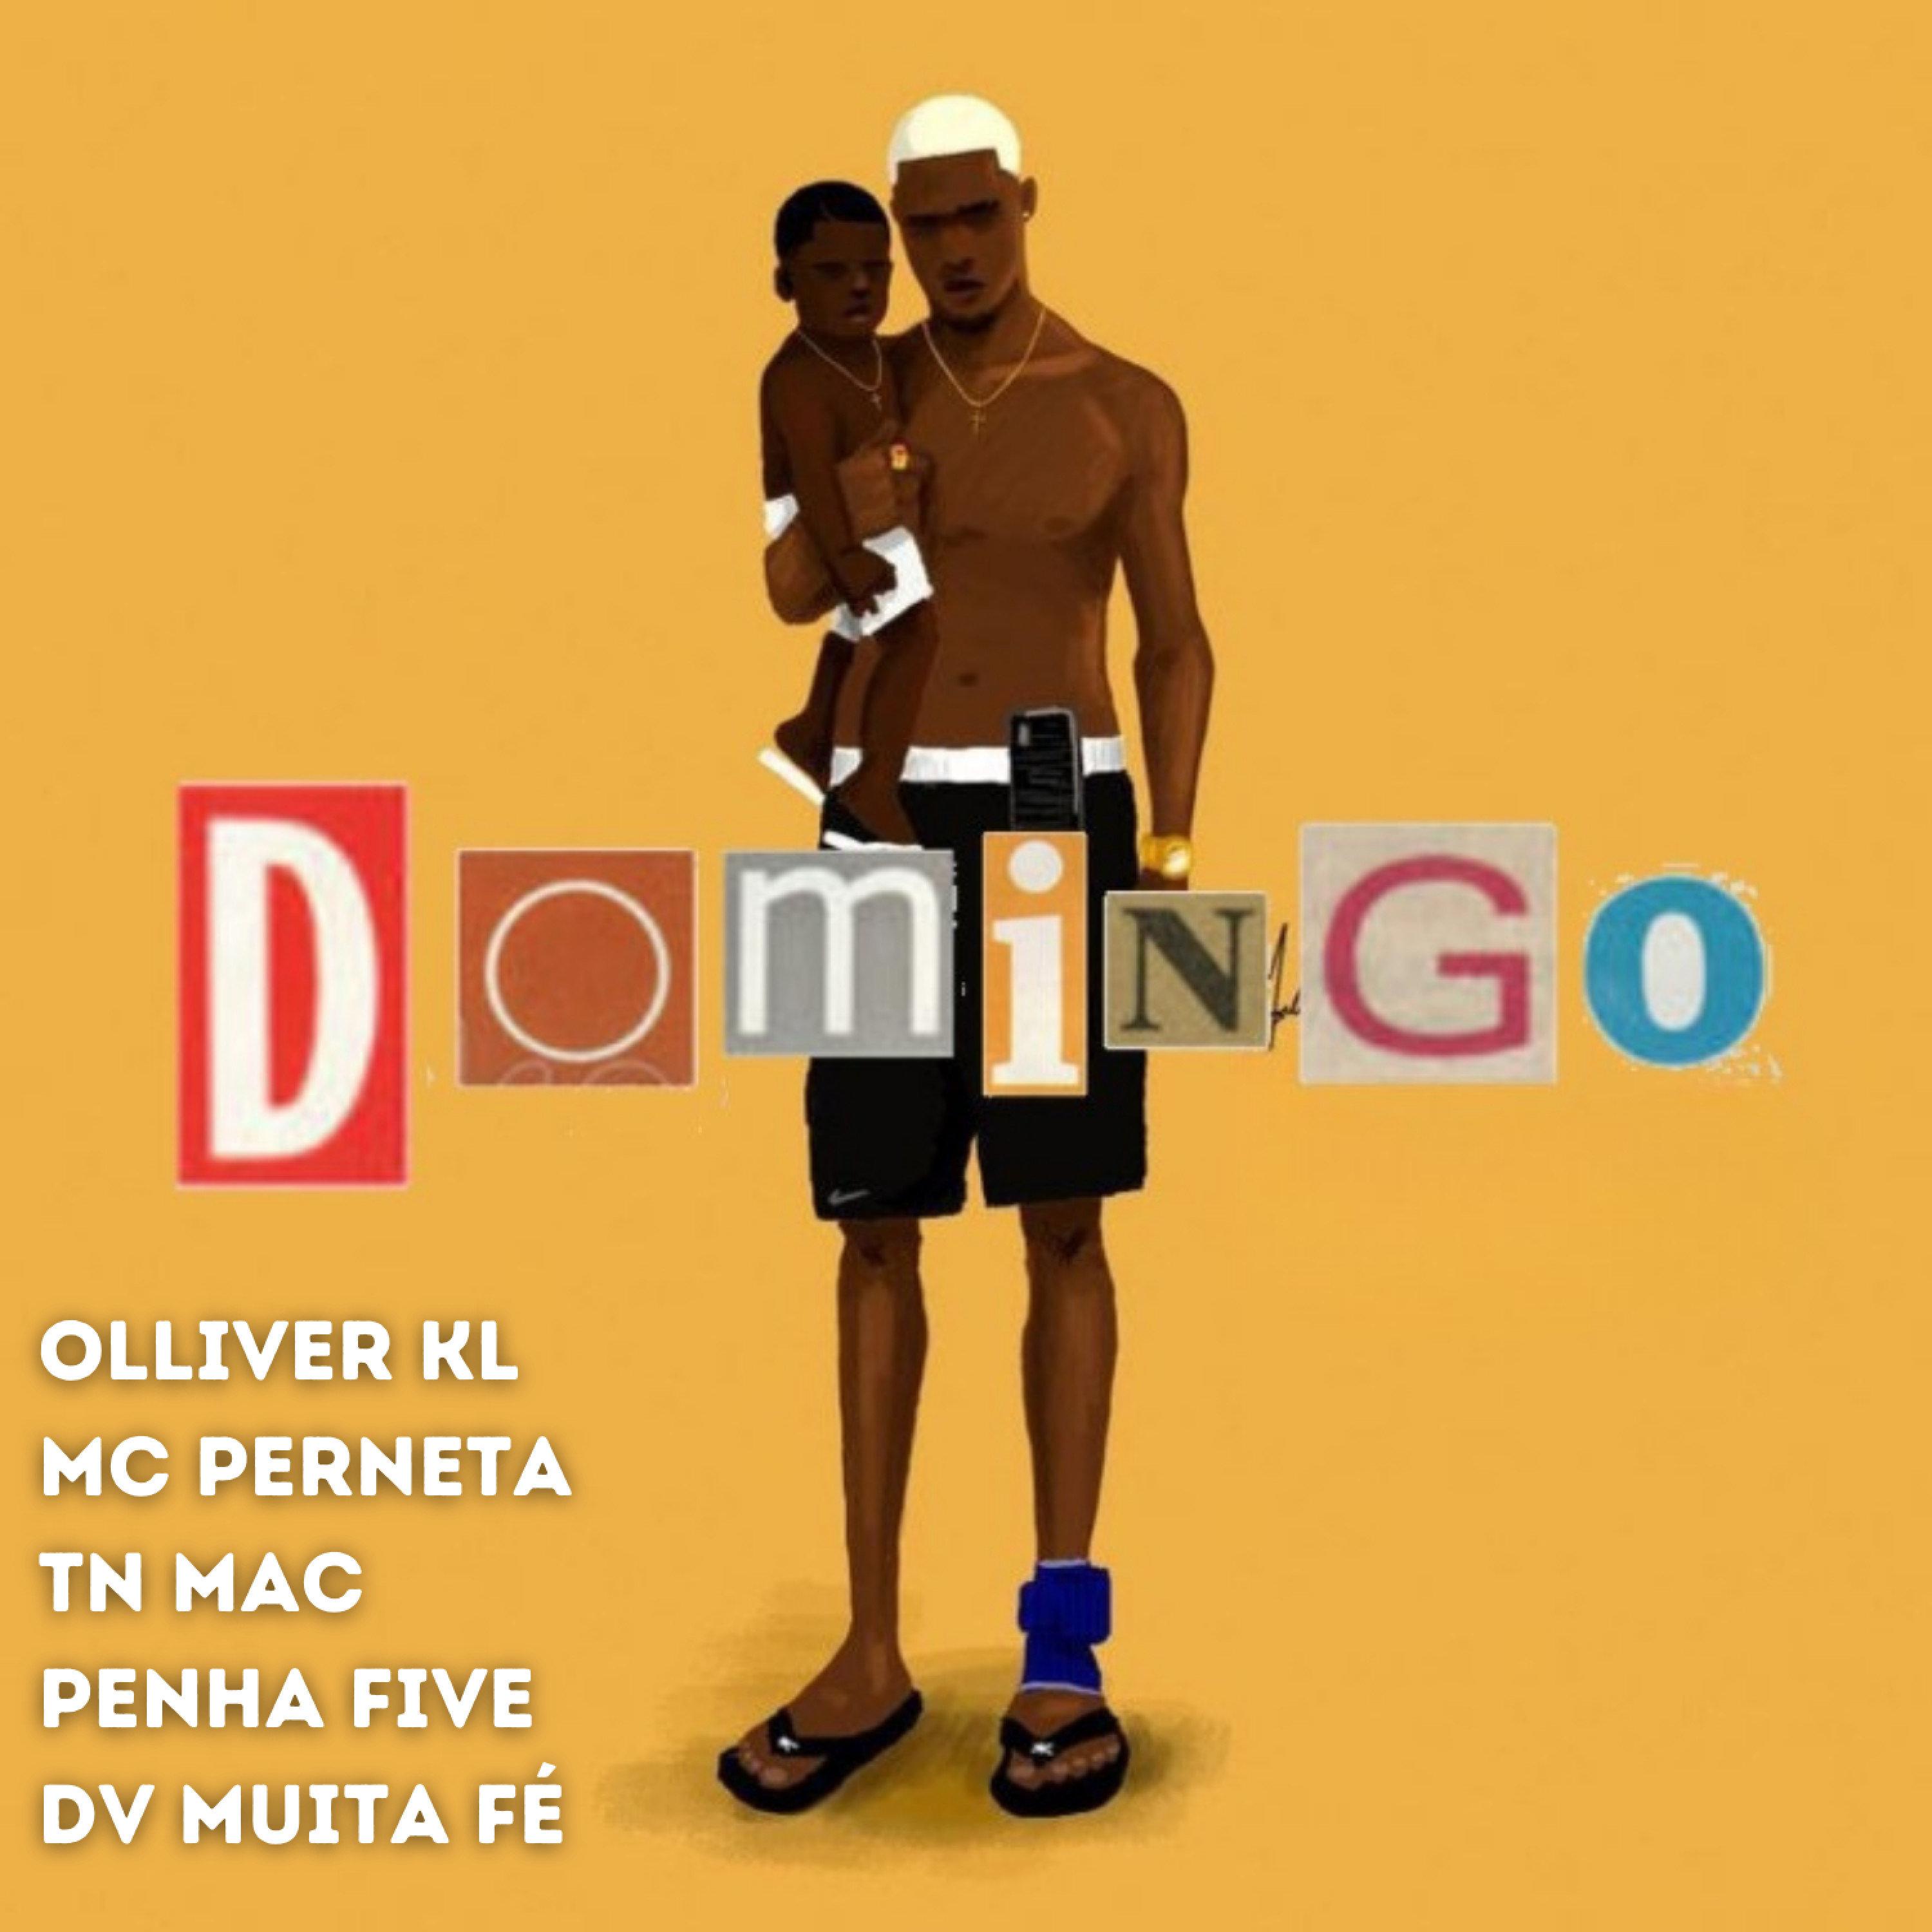 Olliver KL - Domingo (feat. Mc Perneta, TN Mac, Penha Five & DV Muita Fé)